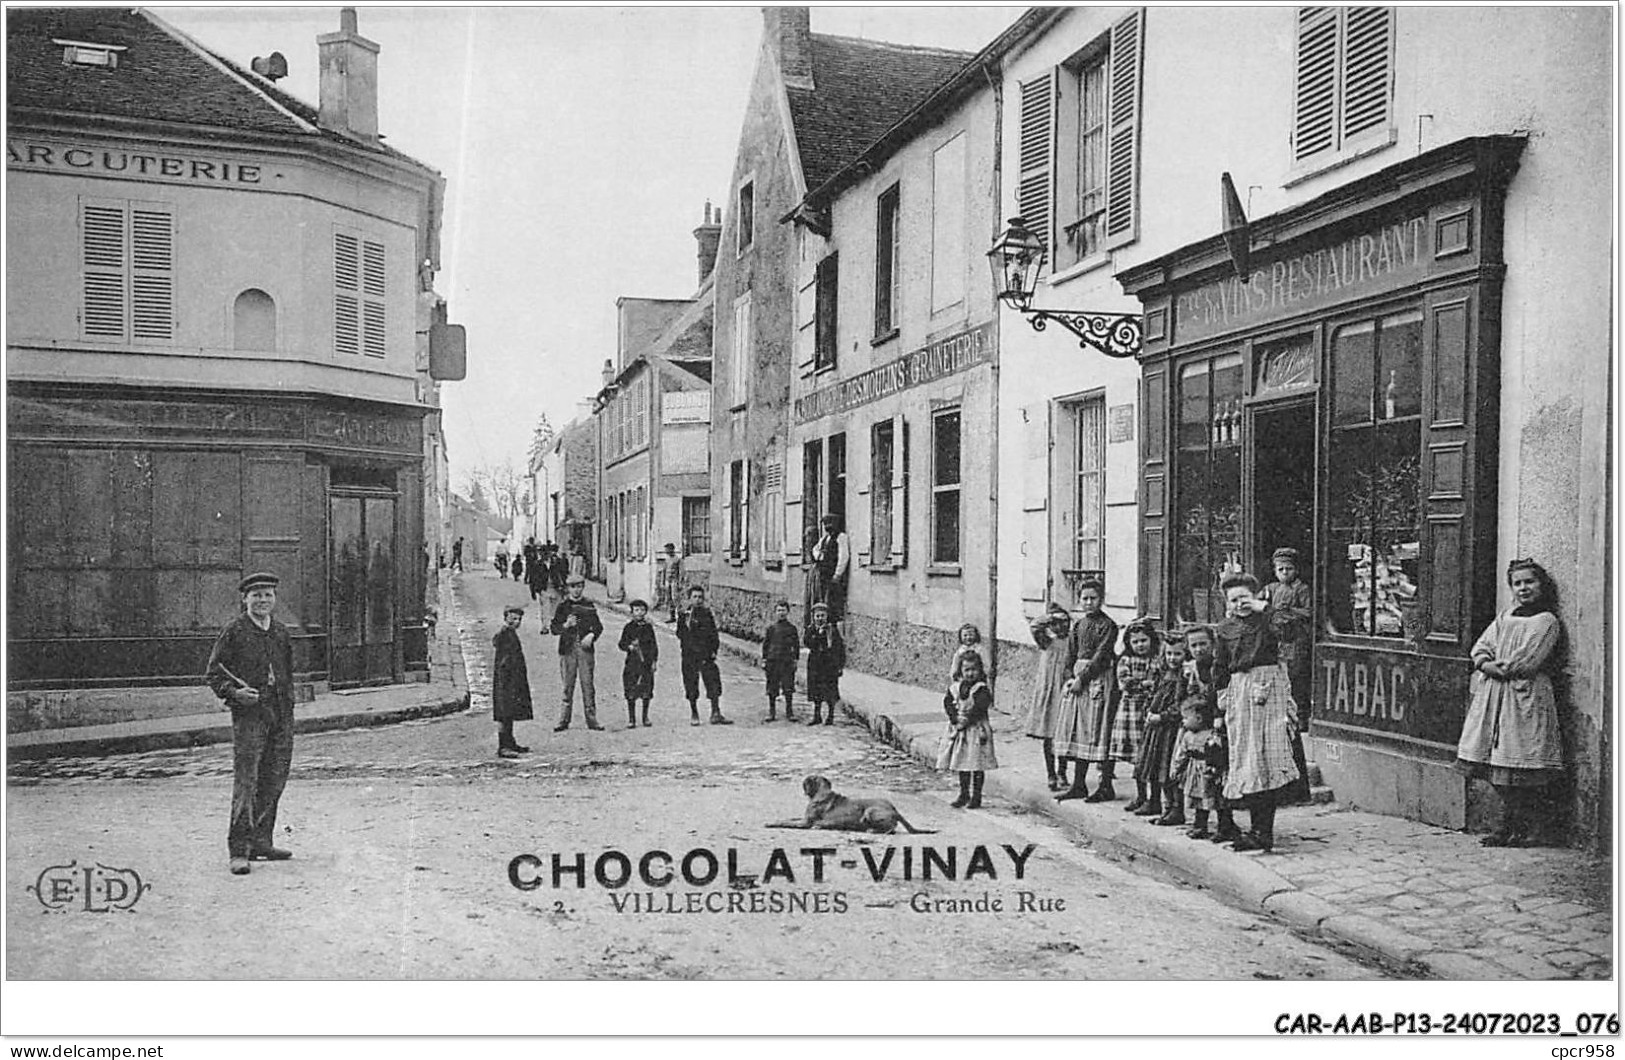 CAR-AABP13-94-1025 - VILLECRESNES - Grande Rue - Publicite Chocolat-Vinay - ELD - Villecresnes